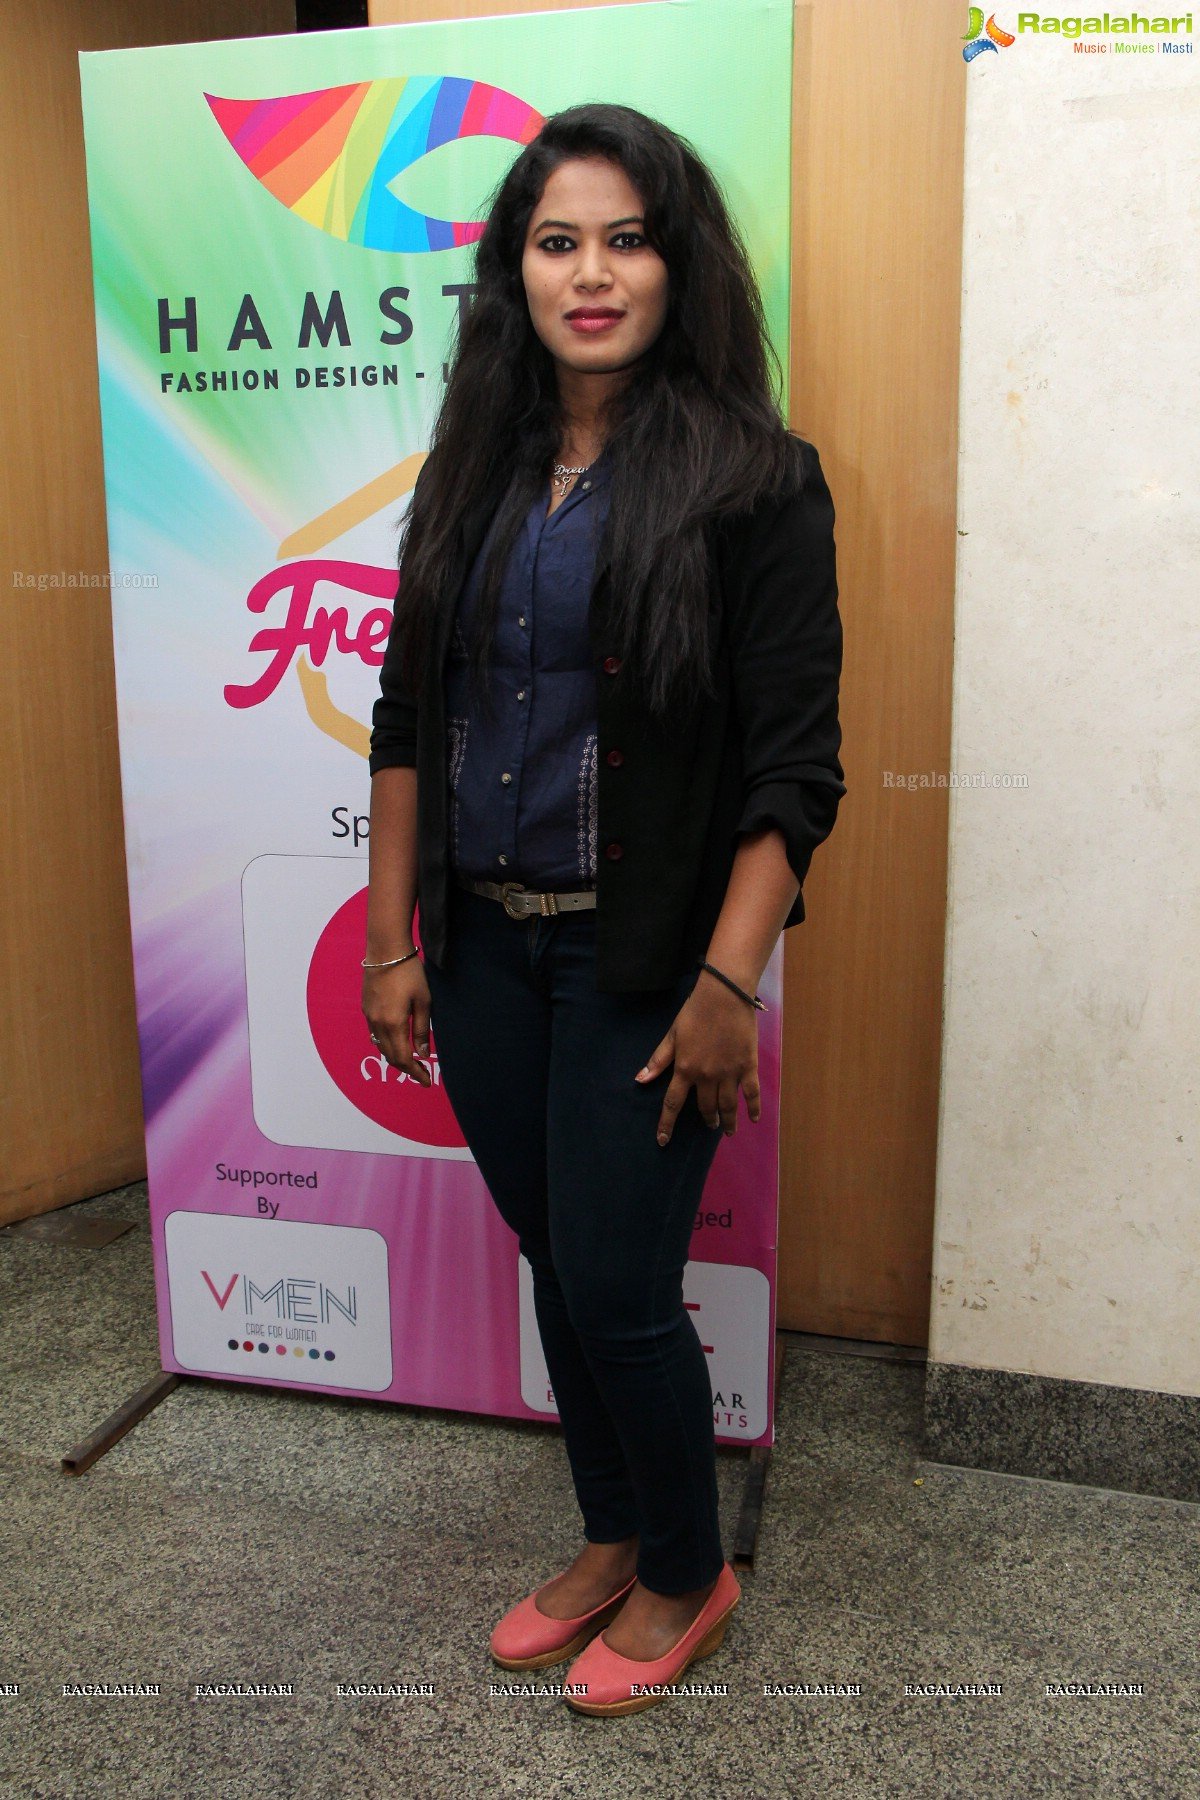 Hamstech Freshers Day Celebrations at Katriya Hotel, Hyderabad